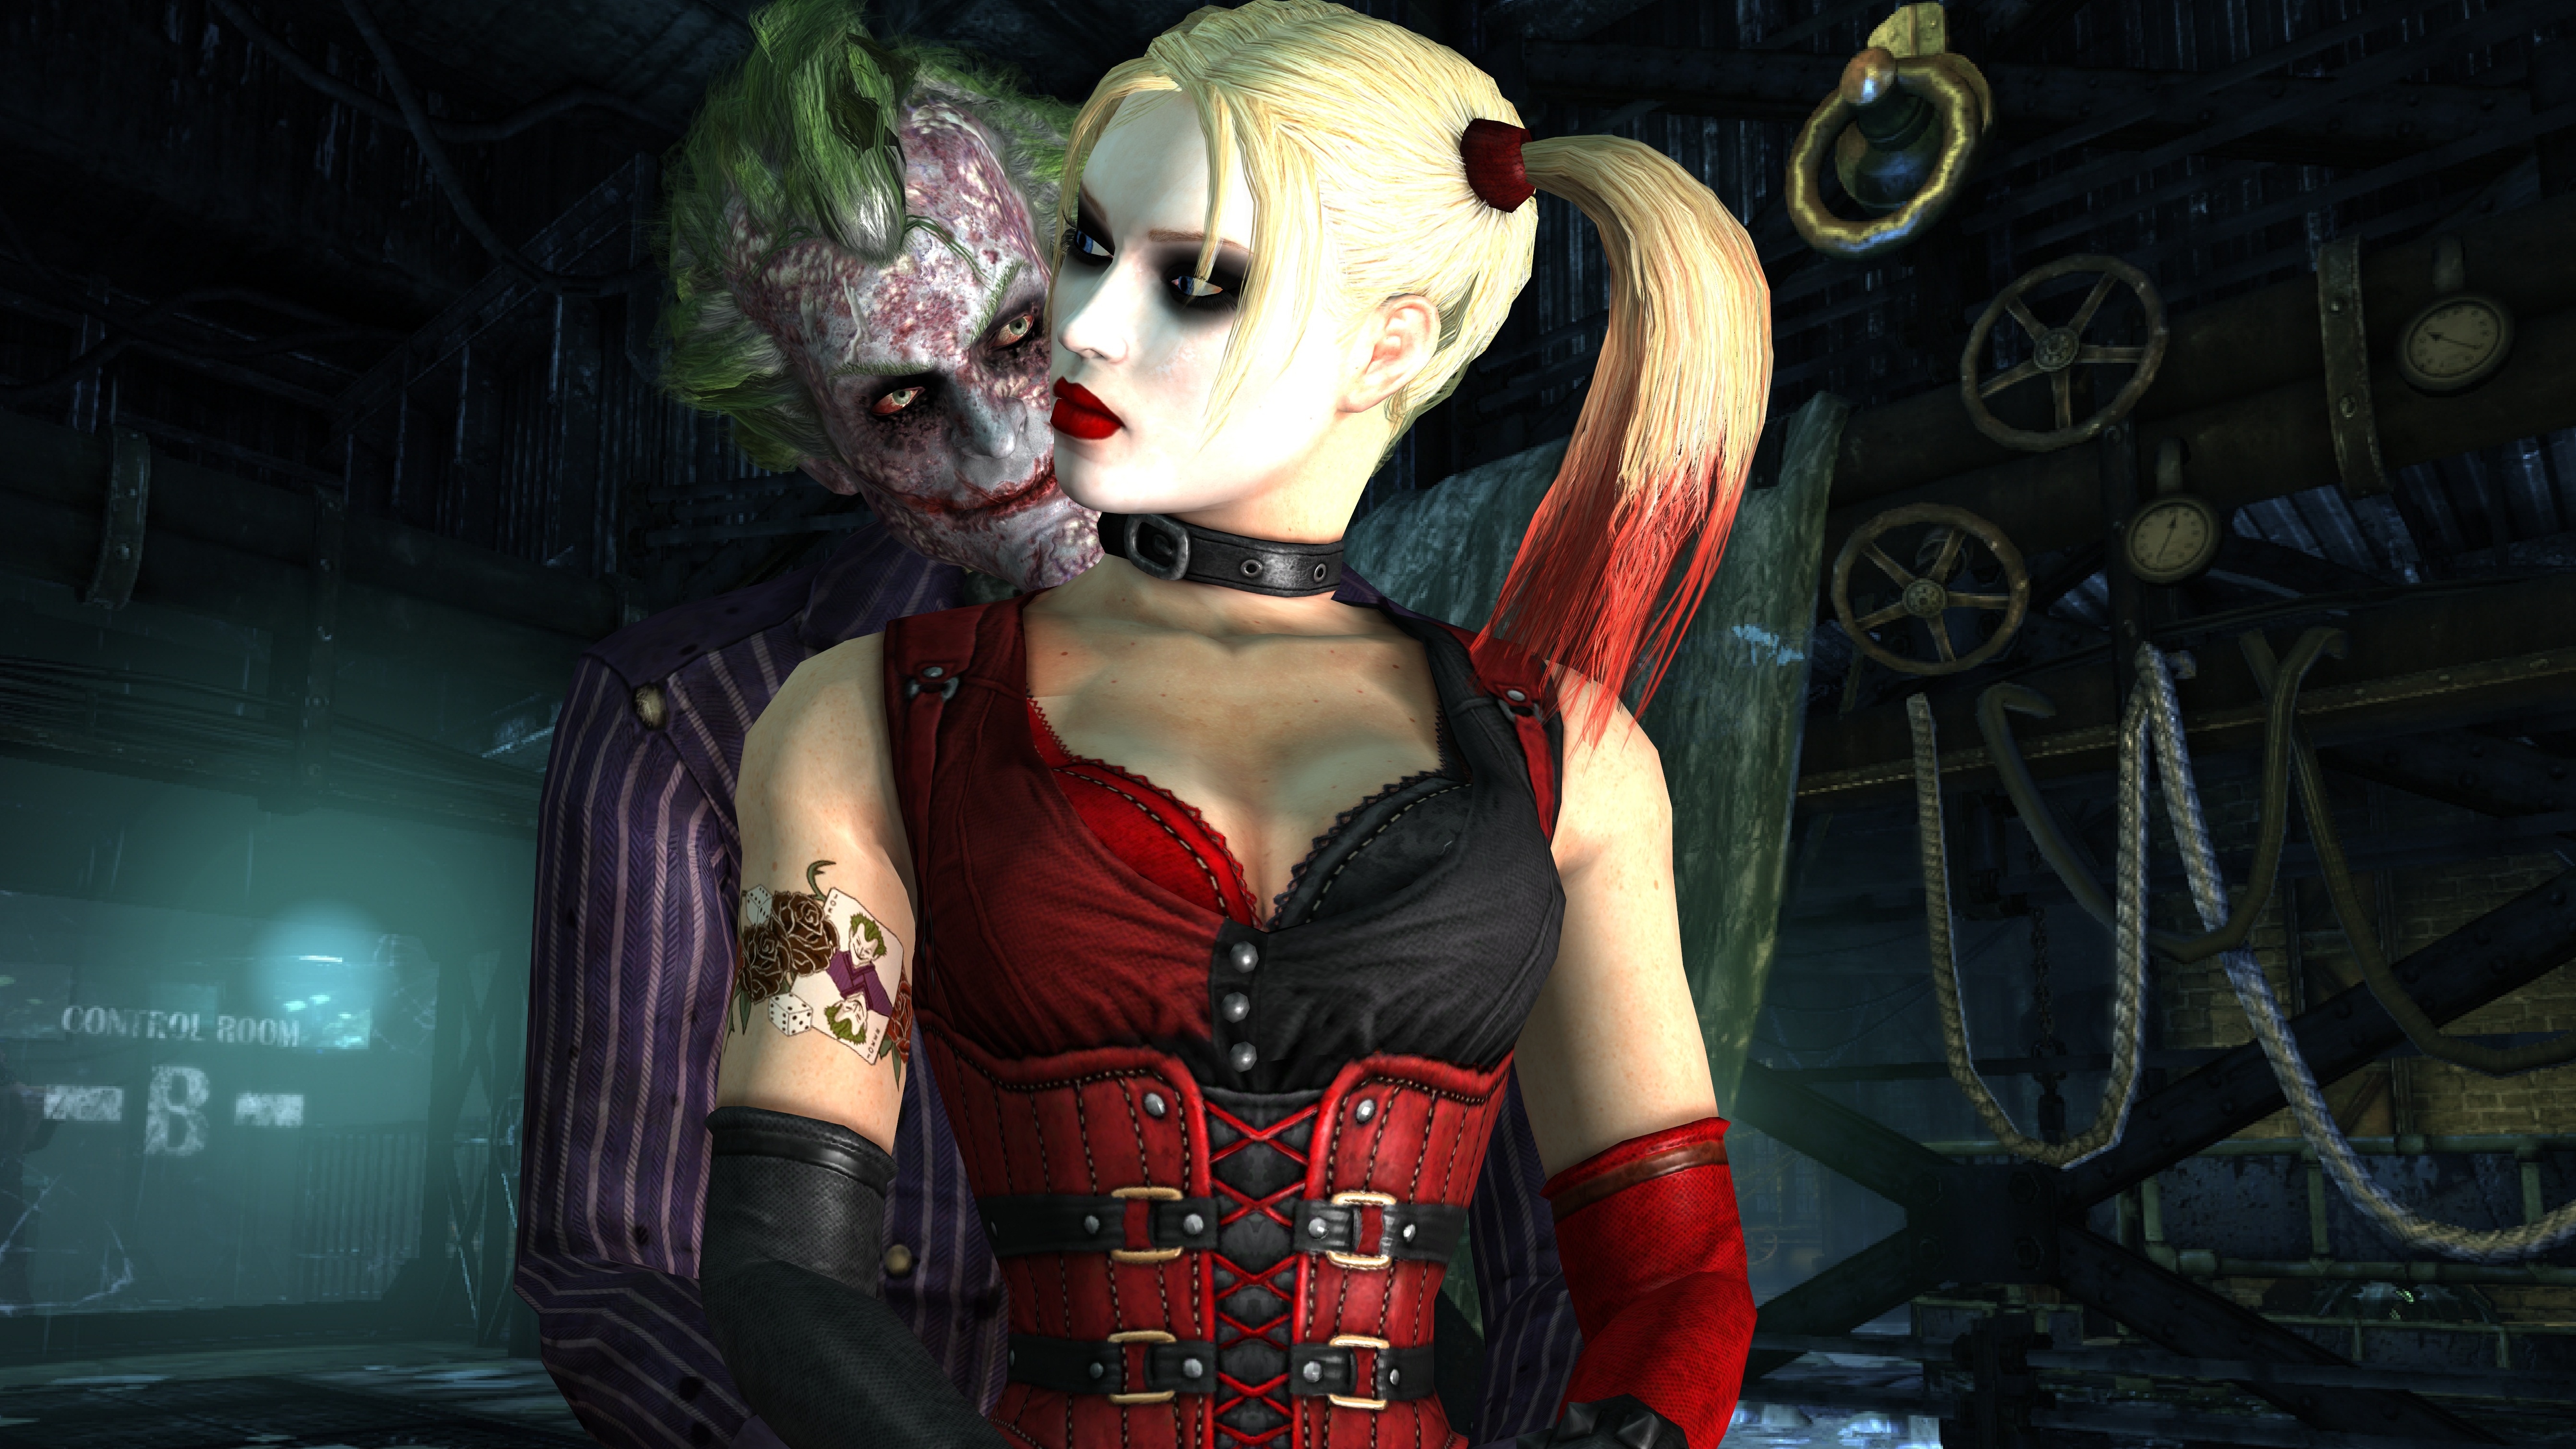 Harley Quinn and Joker Arkham Asylum wallpaper by KrAm5597 on DeviantArt